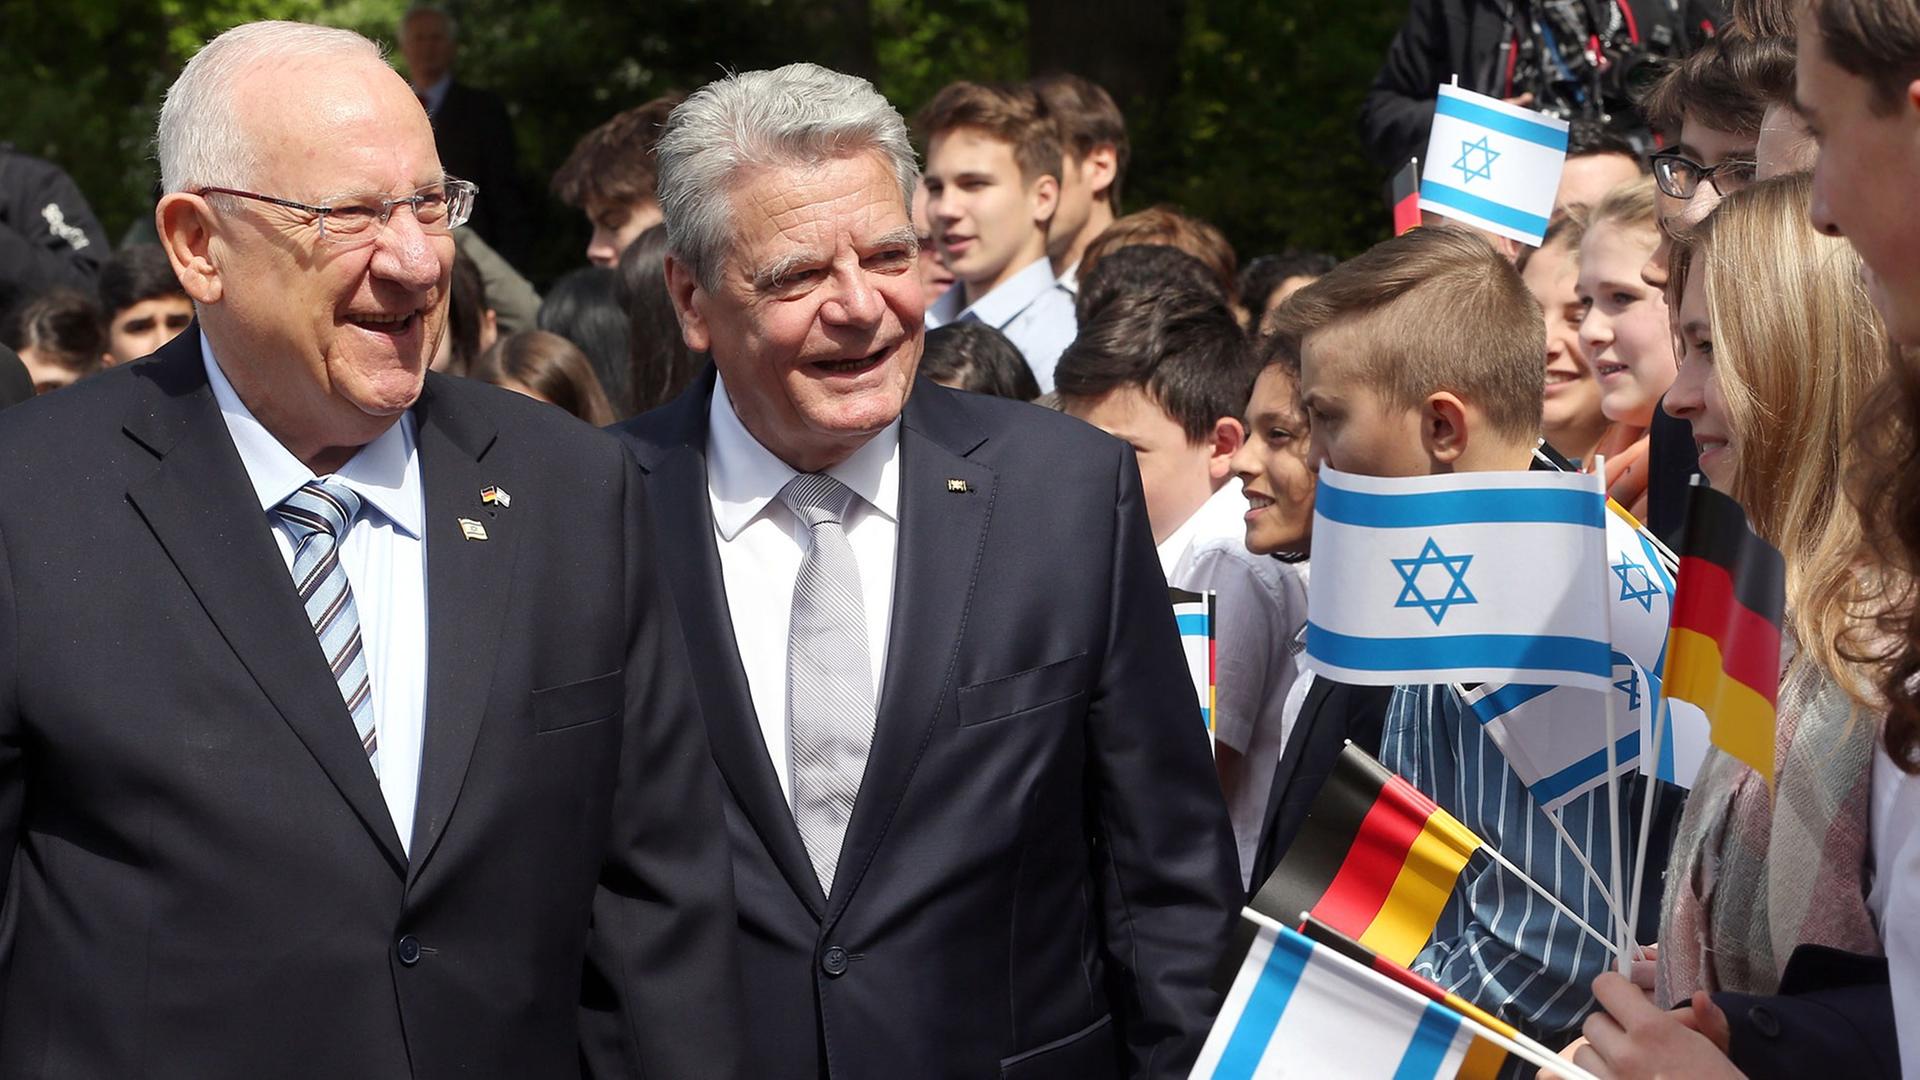 Bundespräsident Gauck (r) empfängt den israelischen Präsidenten Rivlin, daneben Jugendliche mit deutschen und israelischen Fahnen.